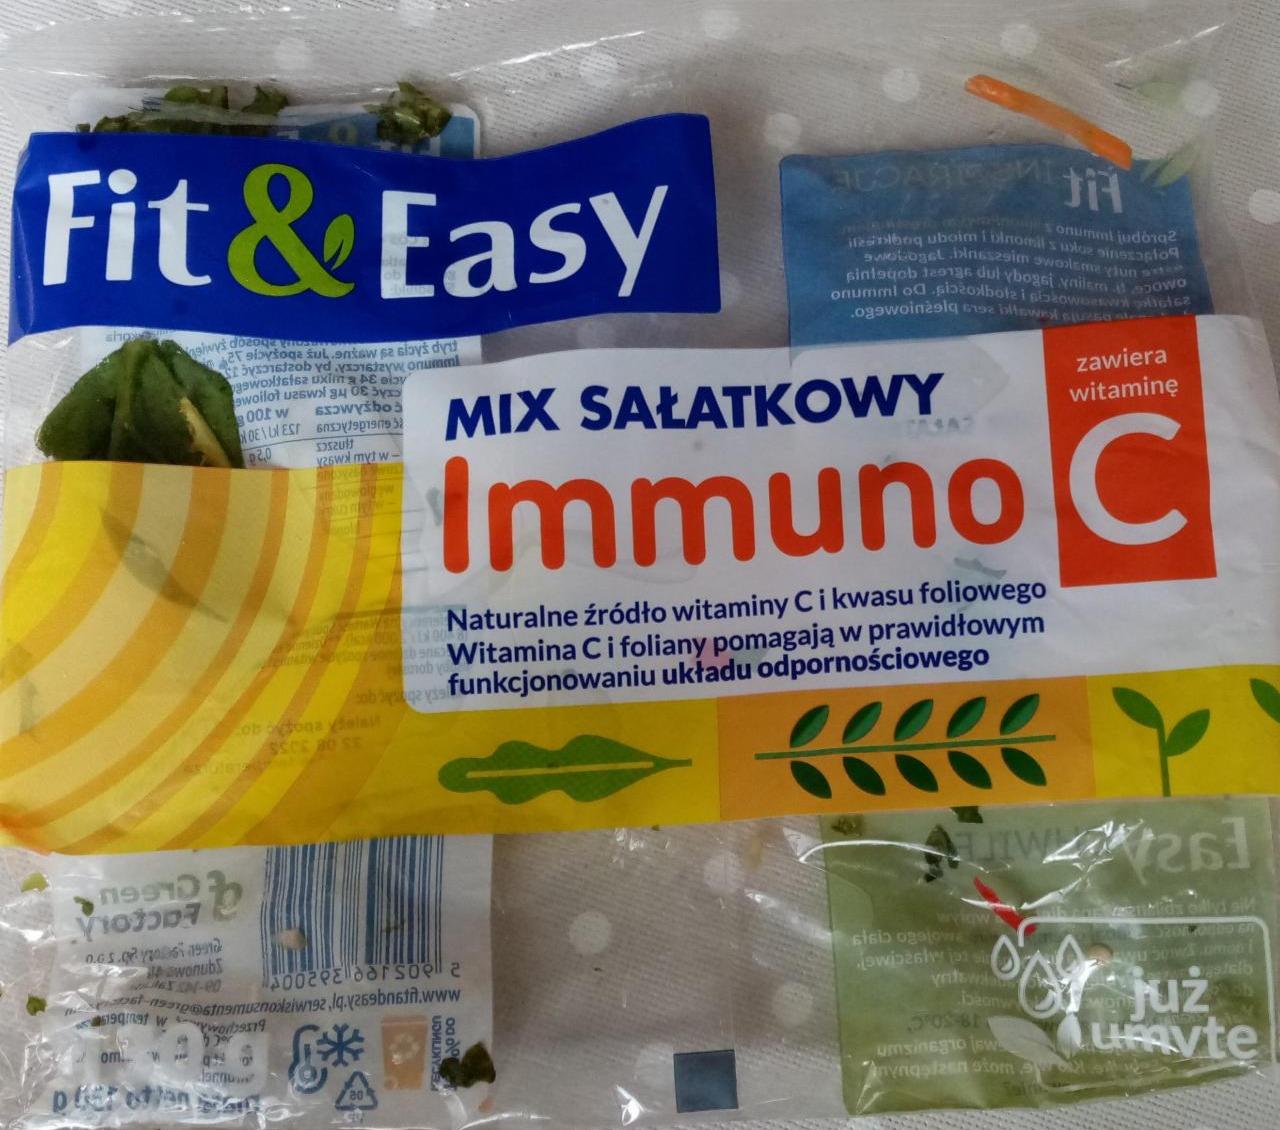 Zdjęcia - Mix salatkowy immuno C Fit & Easy